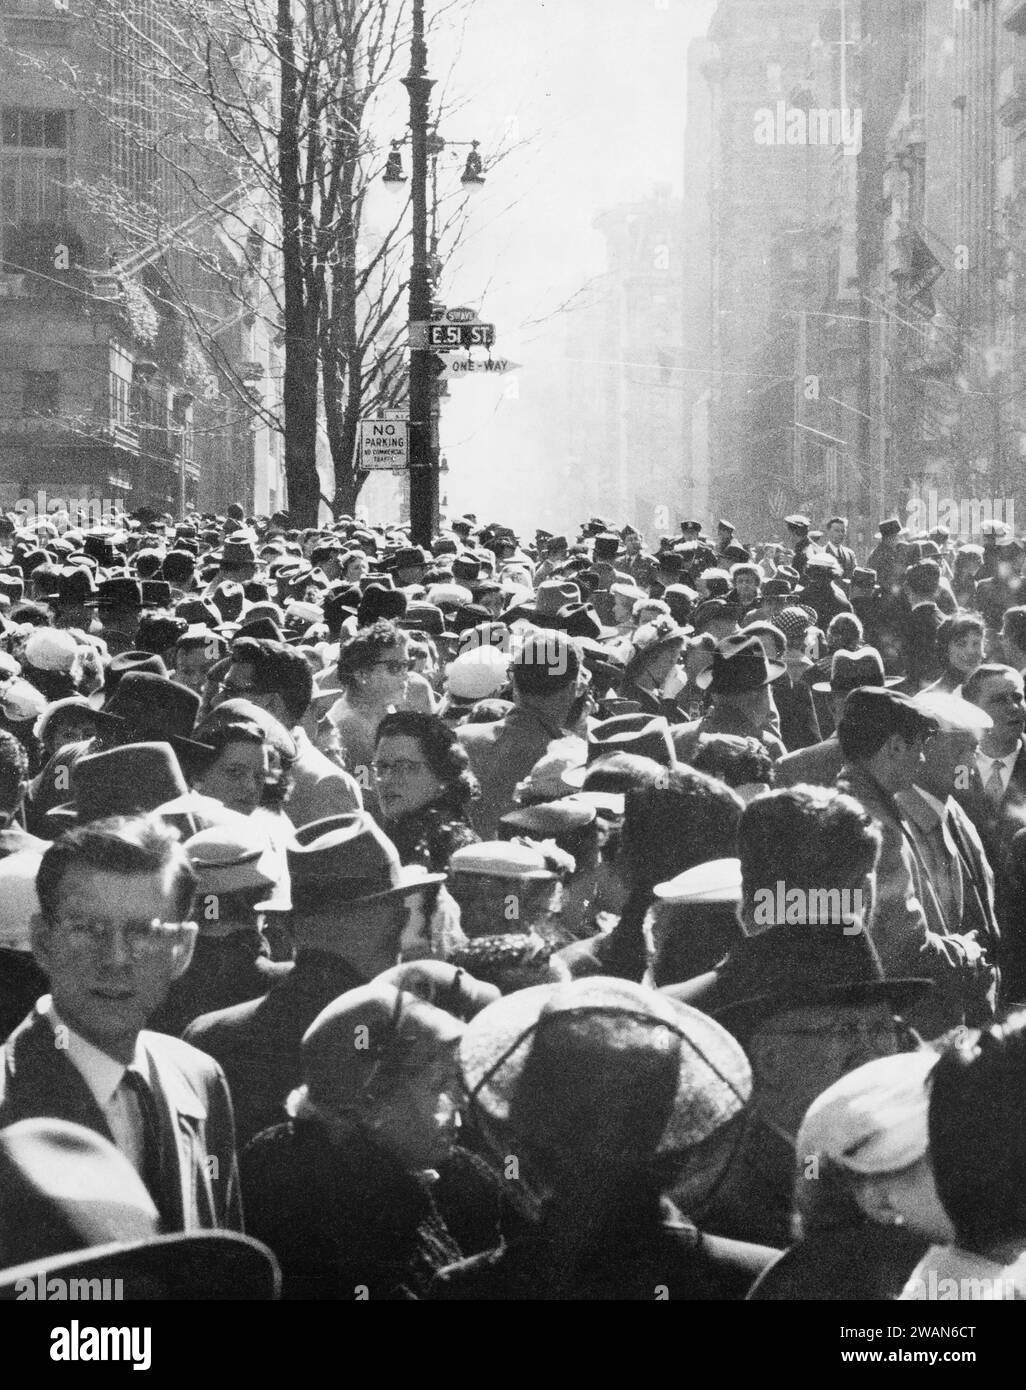 Grande scène de rue de foule, East 51st Street, New York City, New York, États-Unis, Angelo Rizzuto, Anthony Angel Collection, avril 1956 Banque D'Images